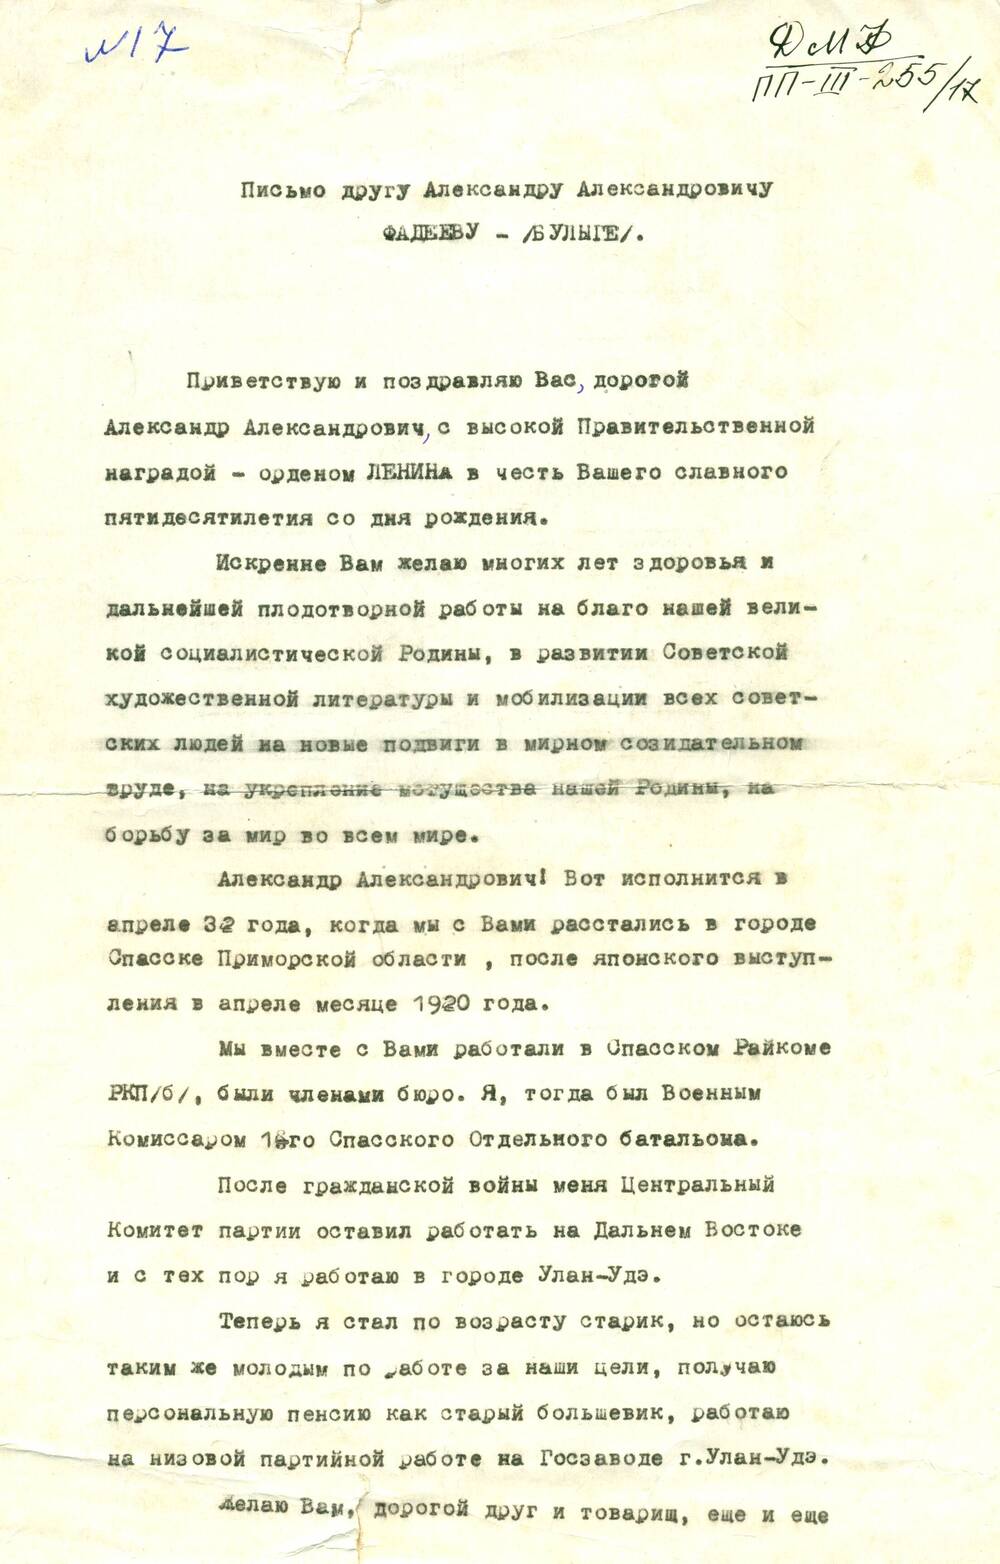 Письмо от Армянинова И.М. г. Улан-Удэ - Фадееву А.А., поздравление с 50-летием